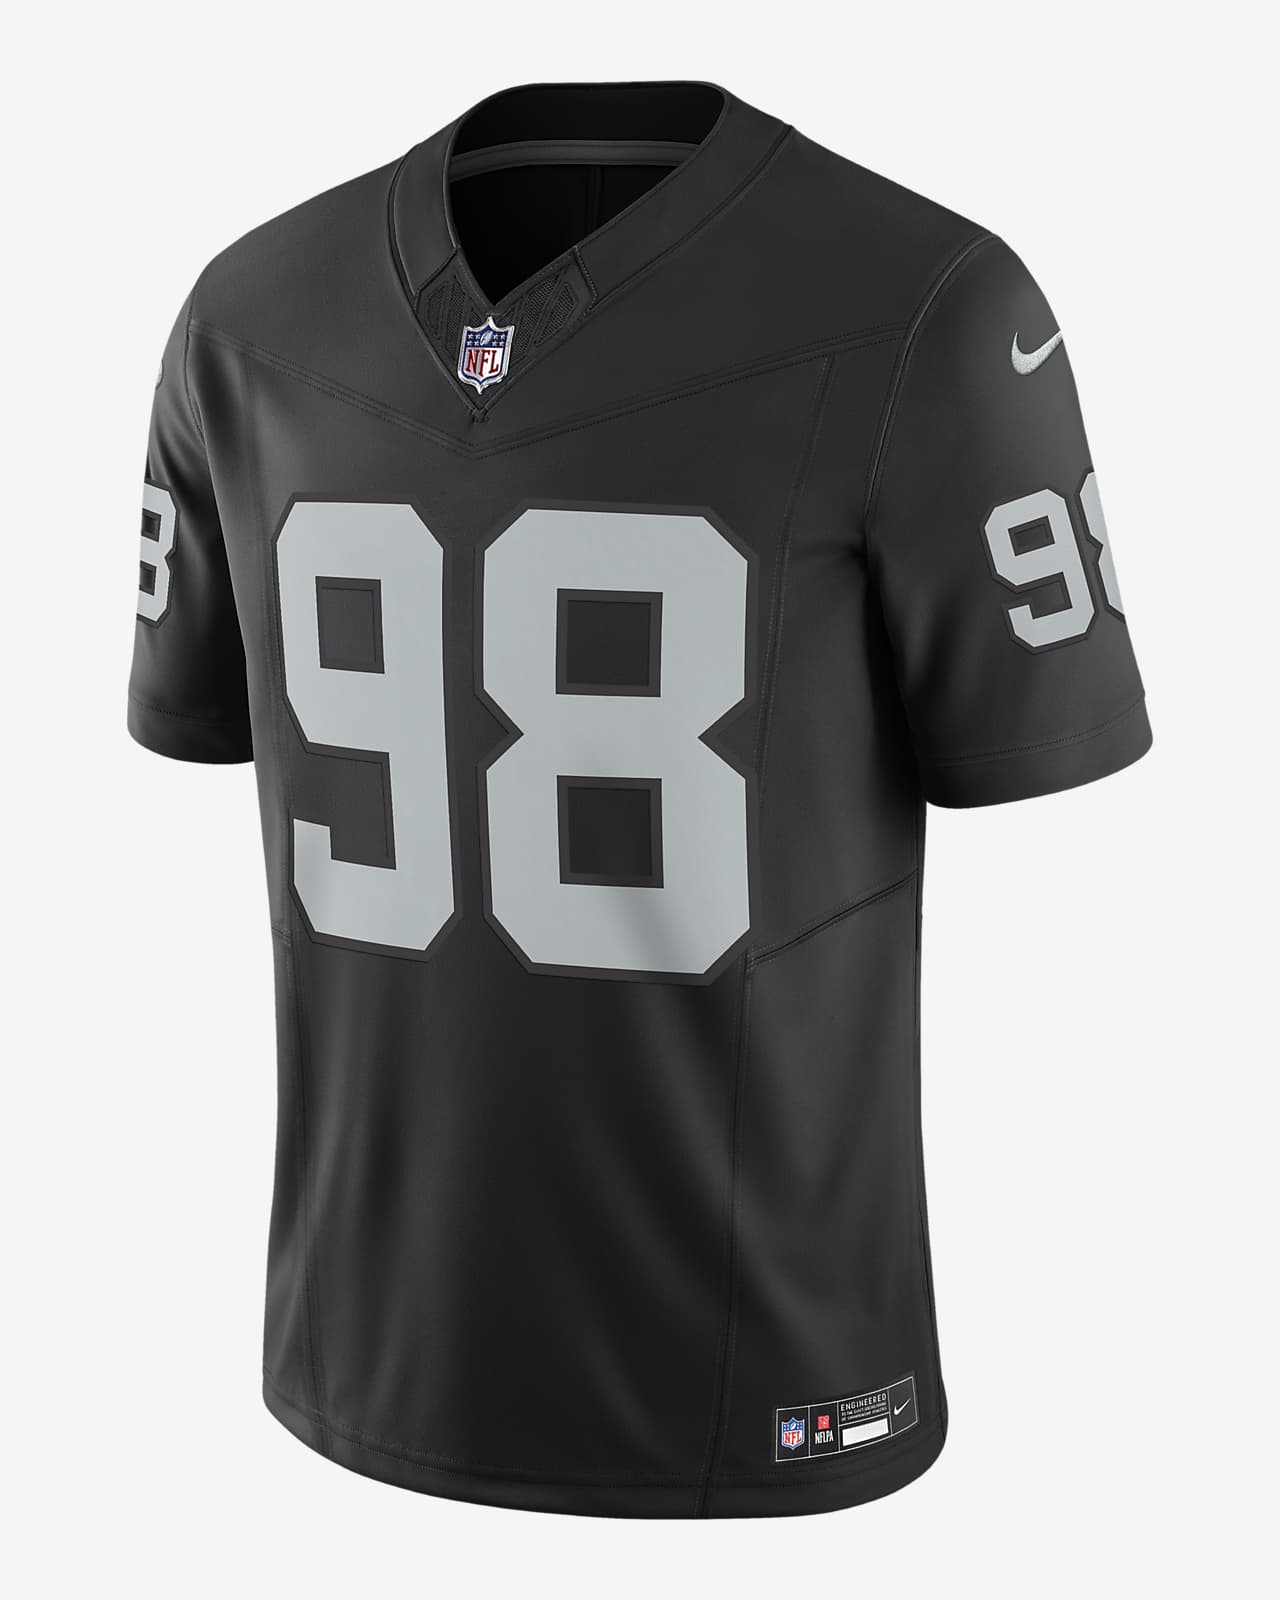 Jersey de fútbol americano Nike Dri-FIT de la NFL Limited para hombre Maxx Crosby Las Vegas Raiders